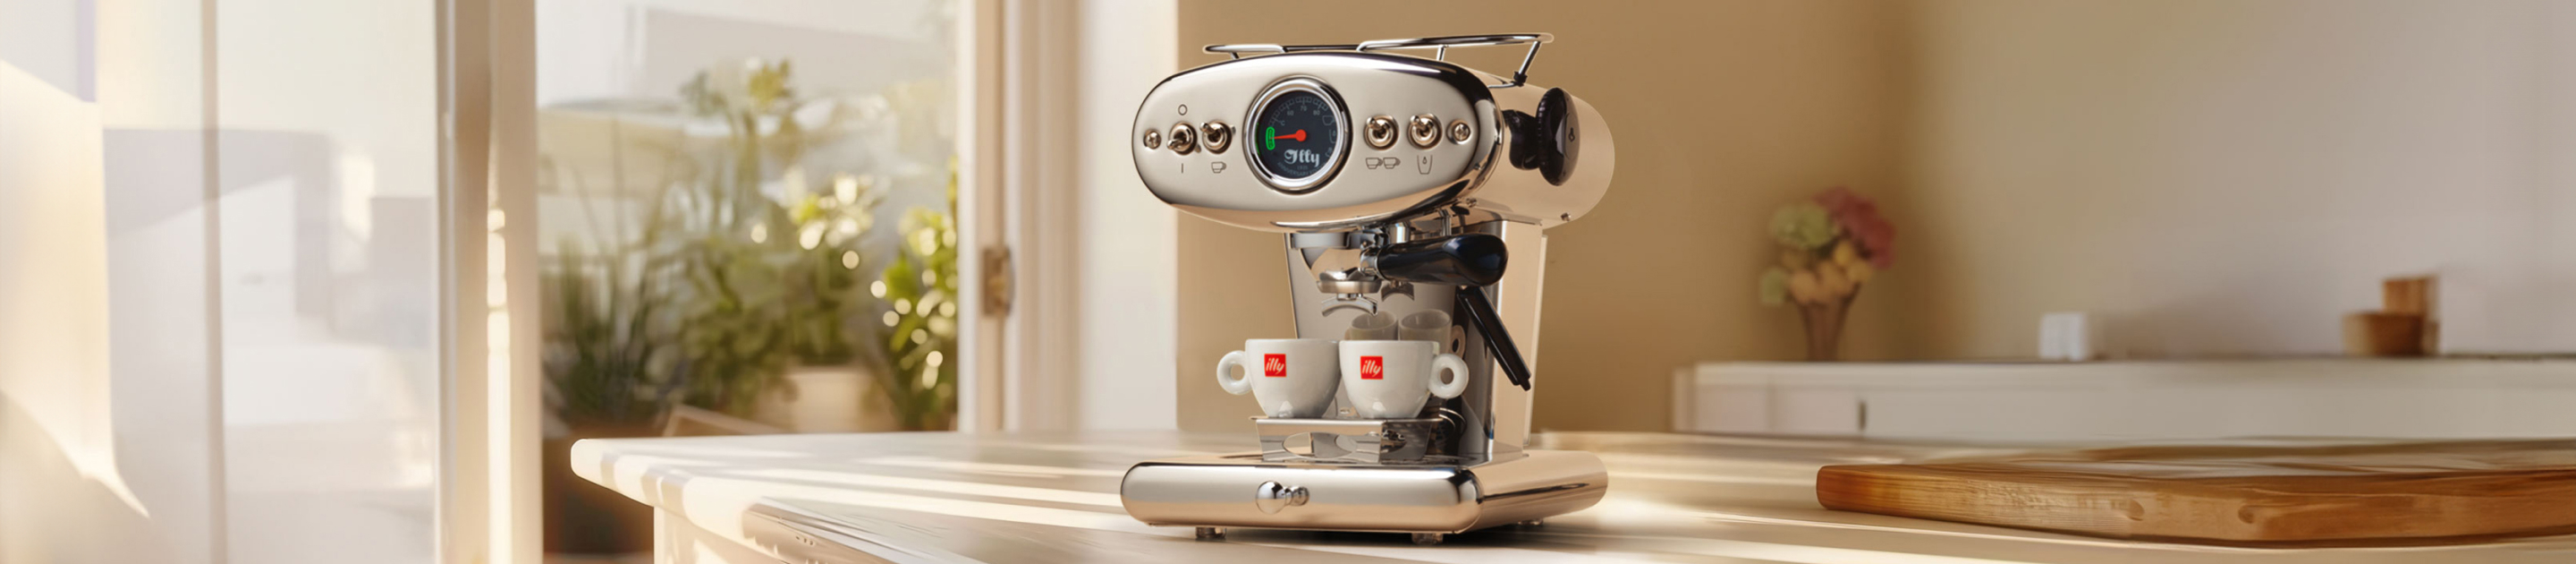 Machines voor gemalen koffie en E.S.E.-pods